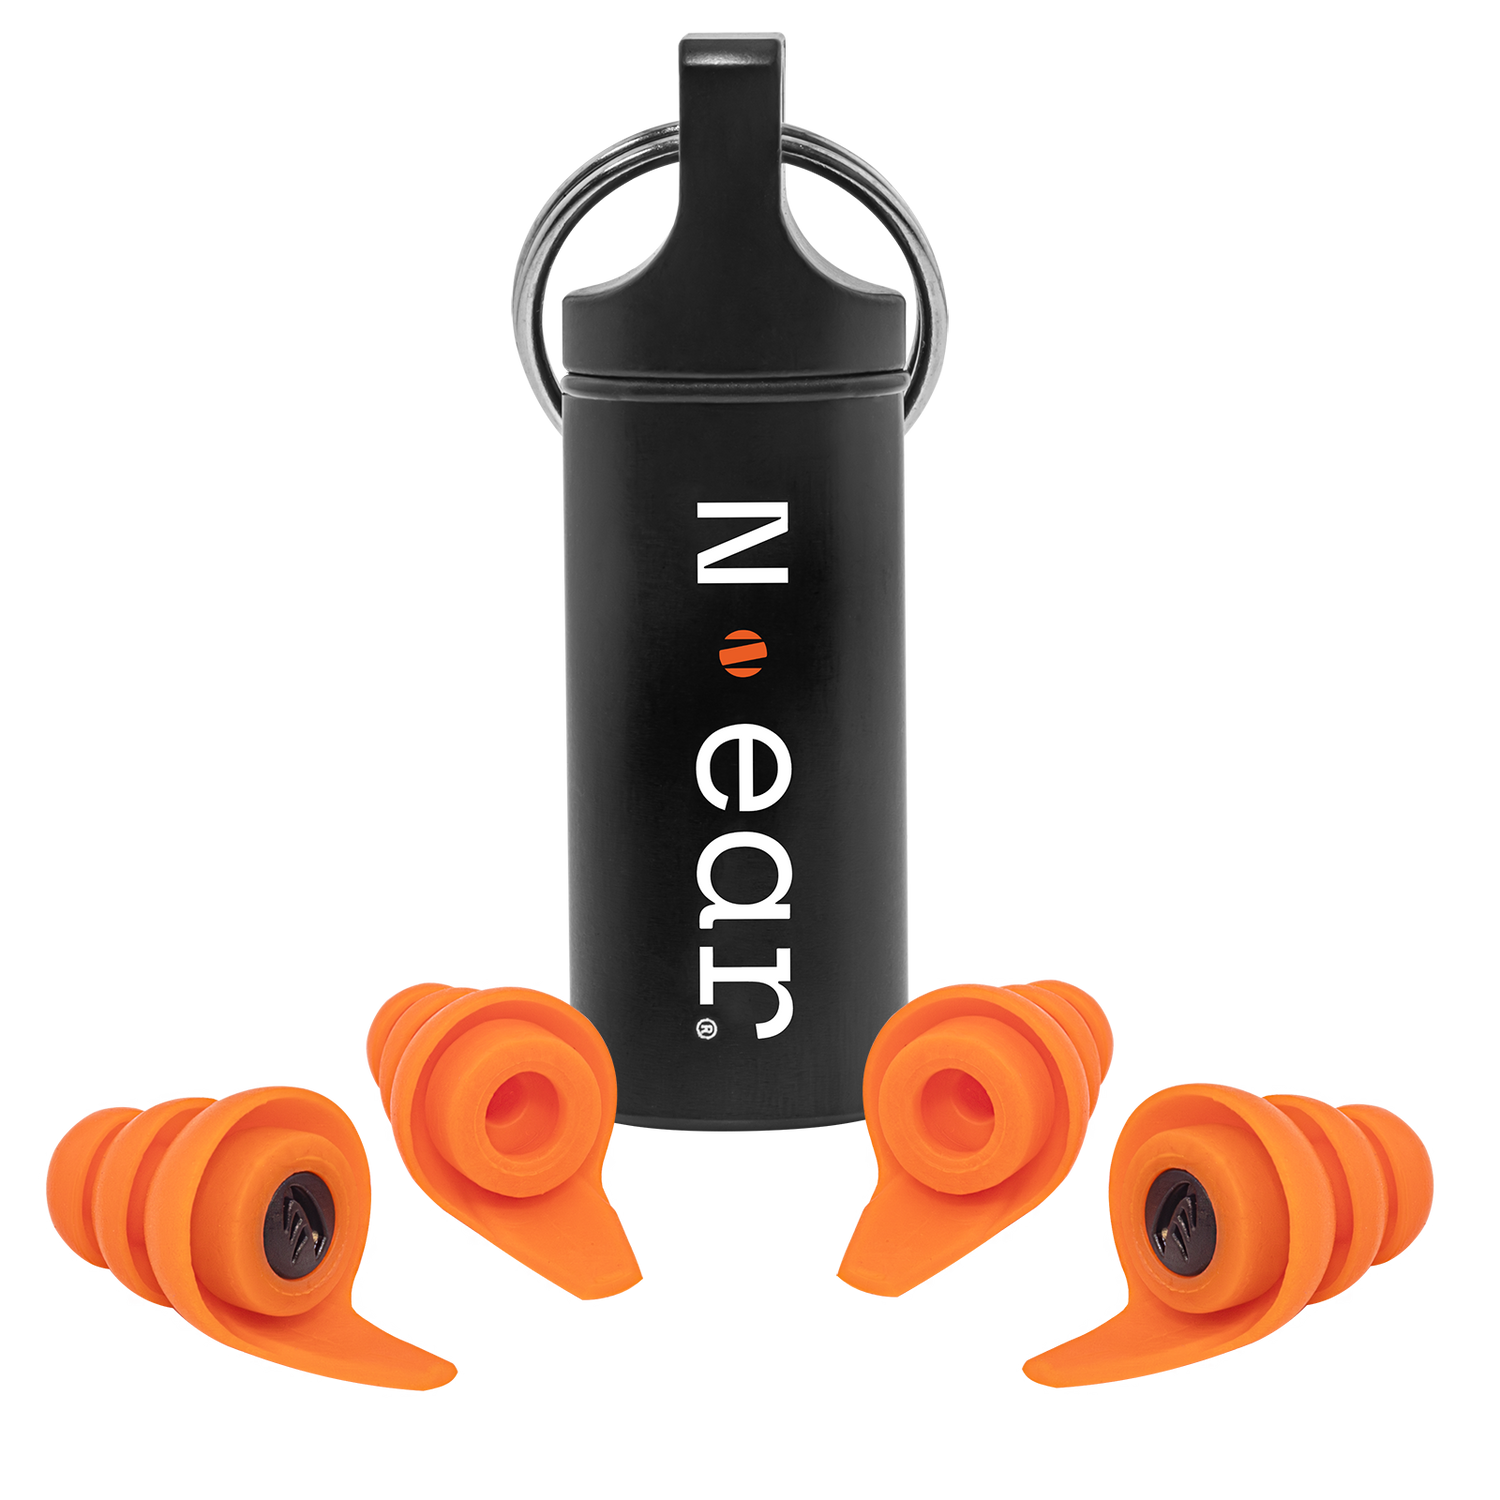 N-ear: Protectr™ Earplugs - Heavy Industry